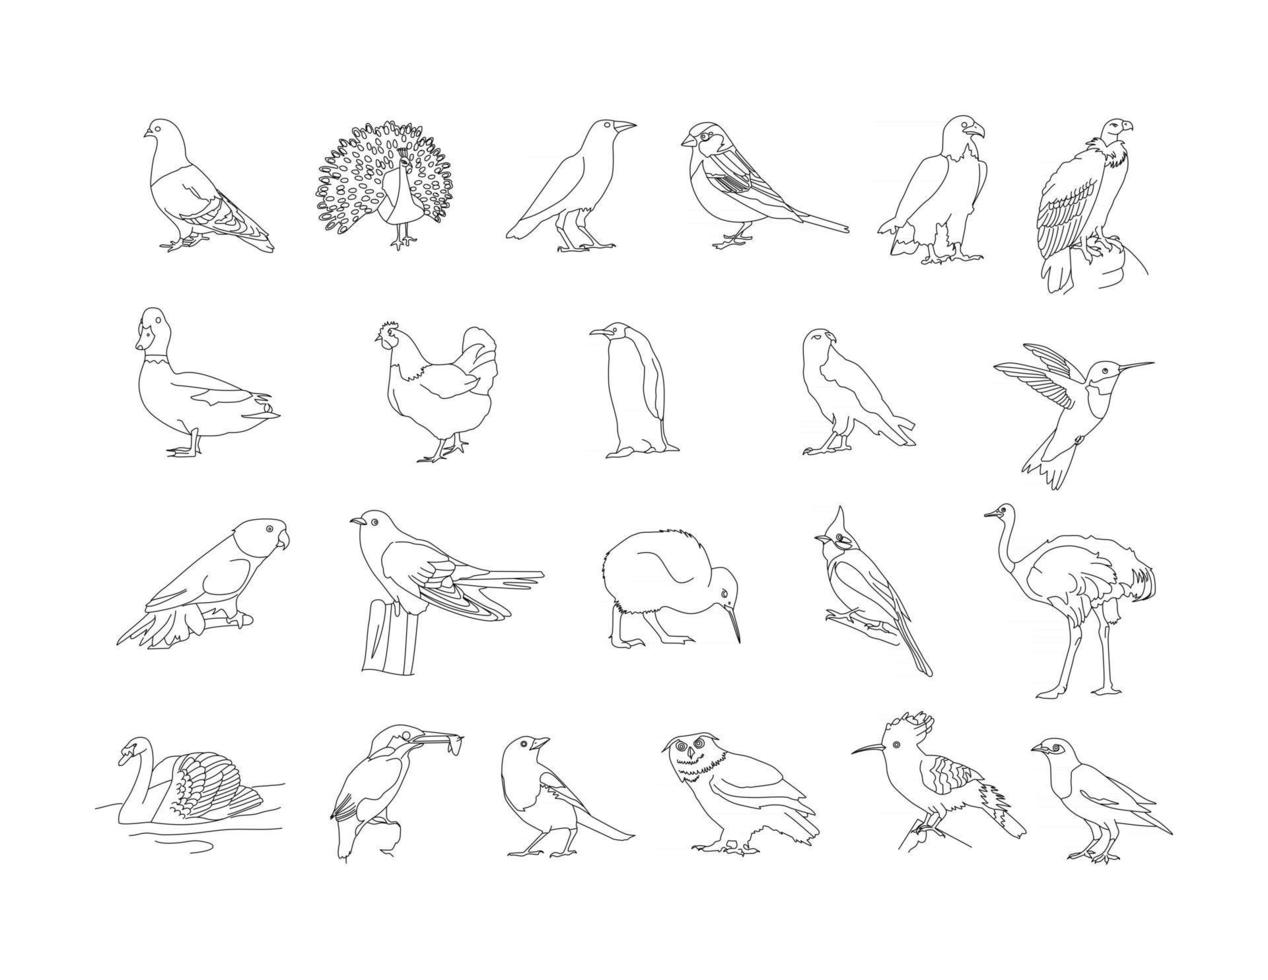 Birds - Pigeon, peacock, crow, children line drawing clip art set vector